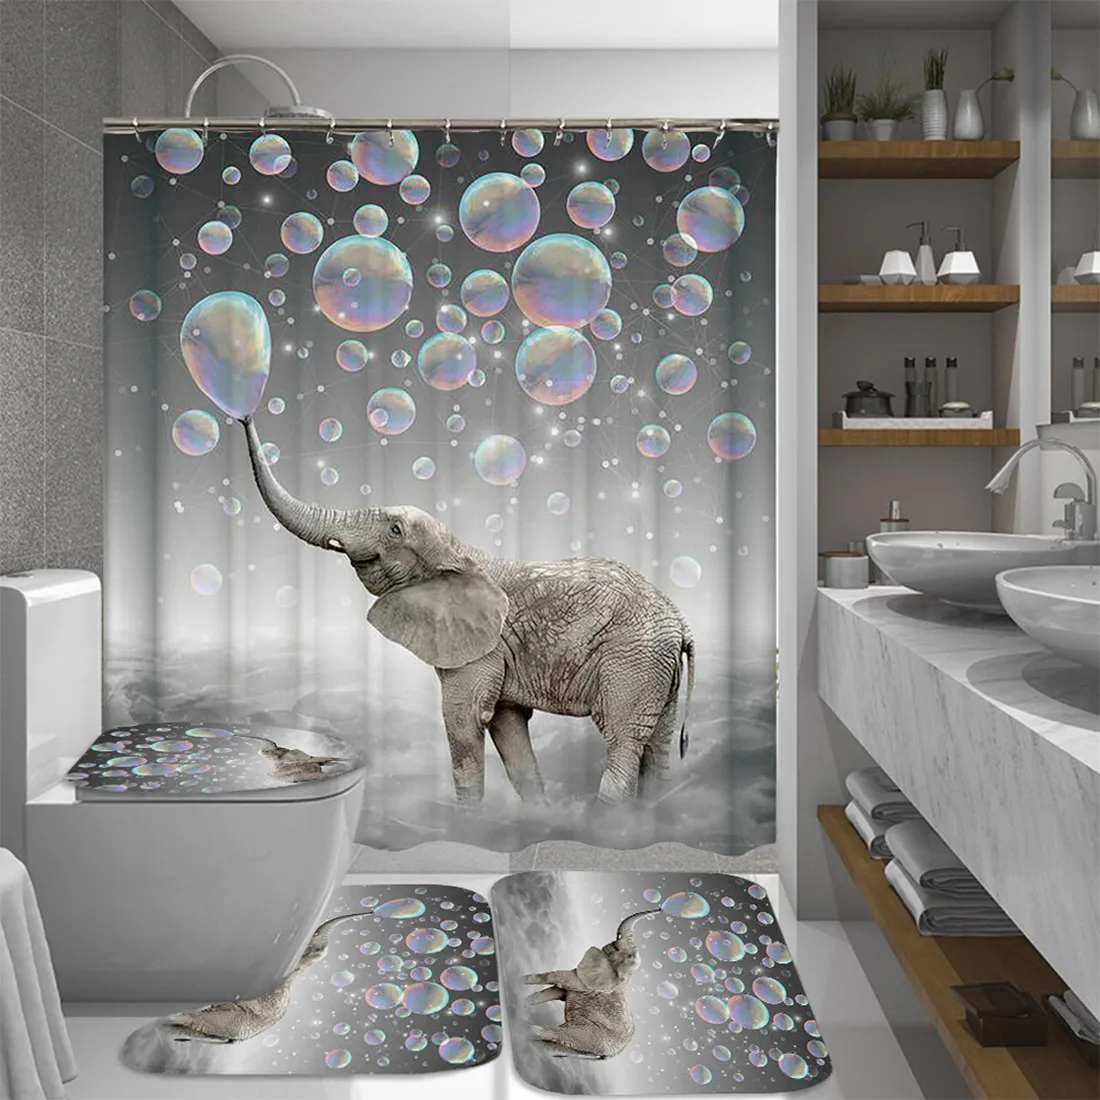 4 в 1 прекрасные пузыри Слон Водонепроницаемый душ занавески s Набор Нескользящие ковры для ванной занавески коврик для ванной комнаты декор